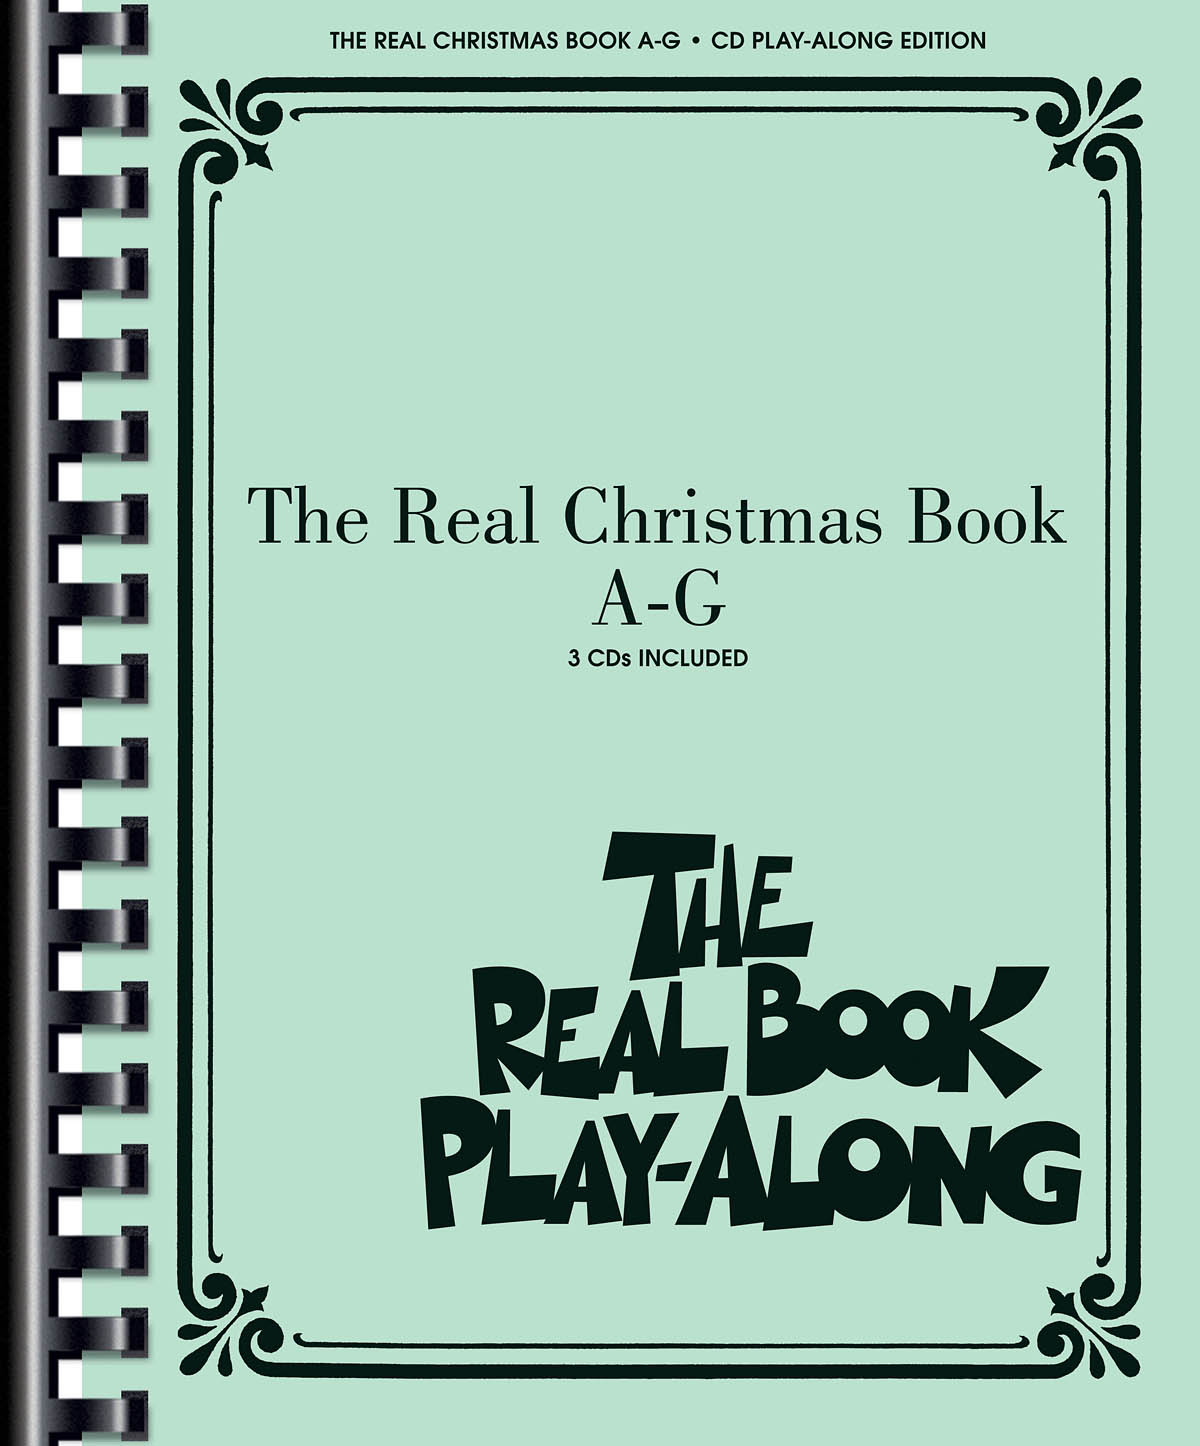 The Real Christmas Book Play-Along, Vol. A-G - noty pro nástroje v ladění C